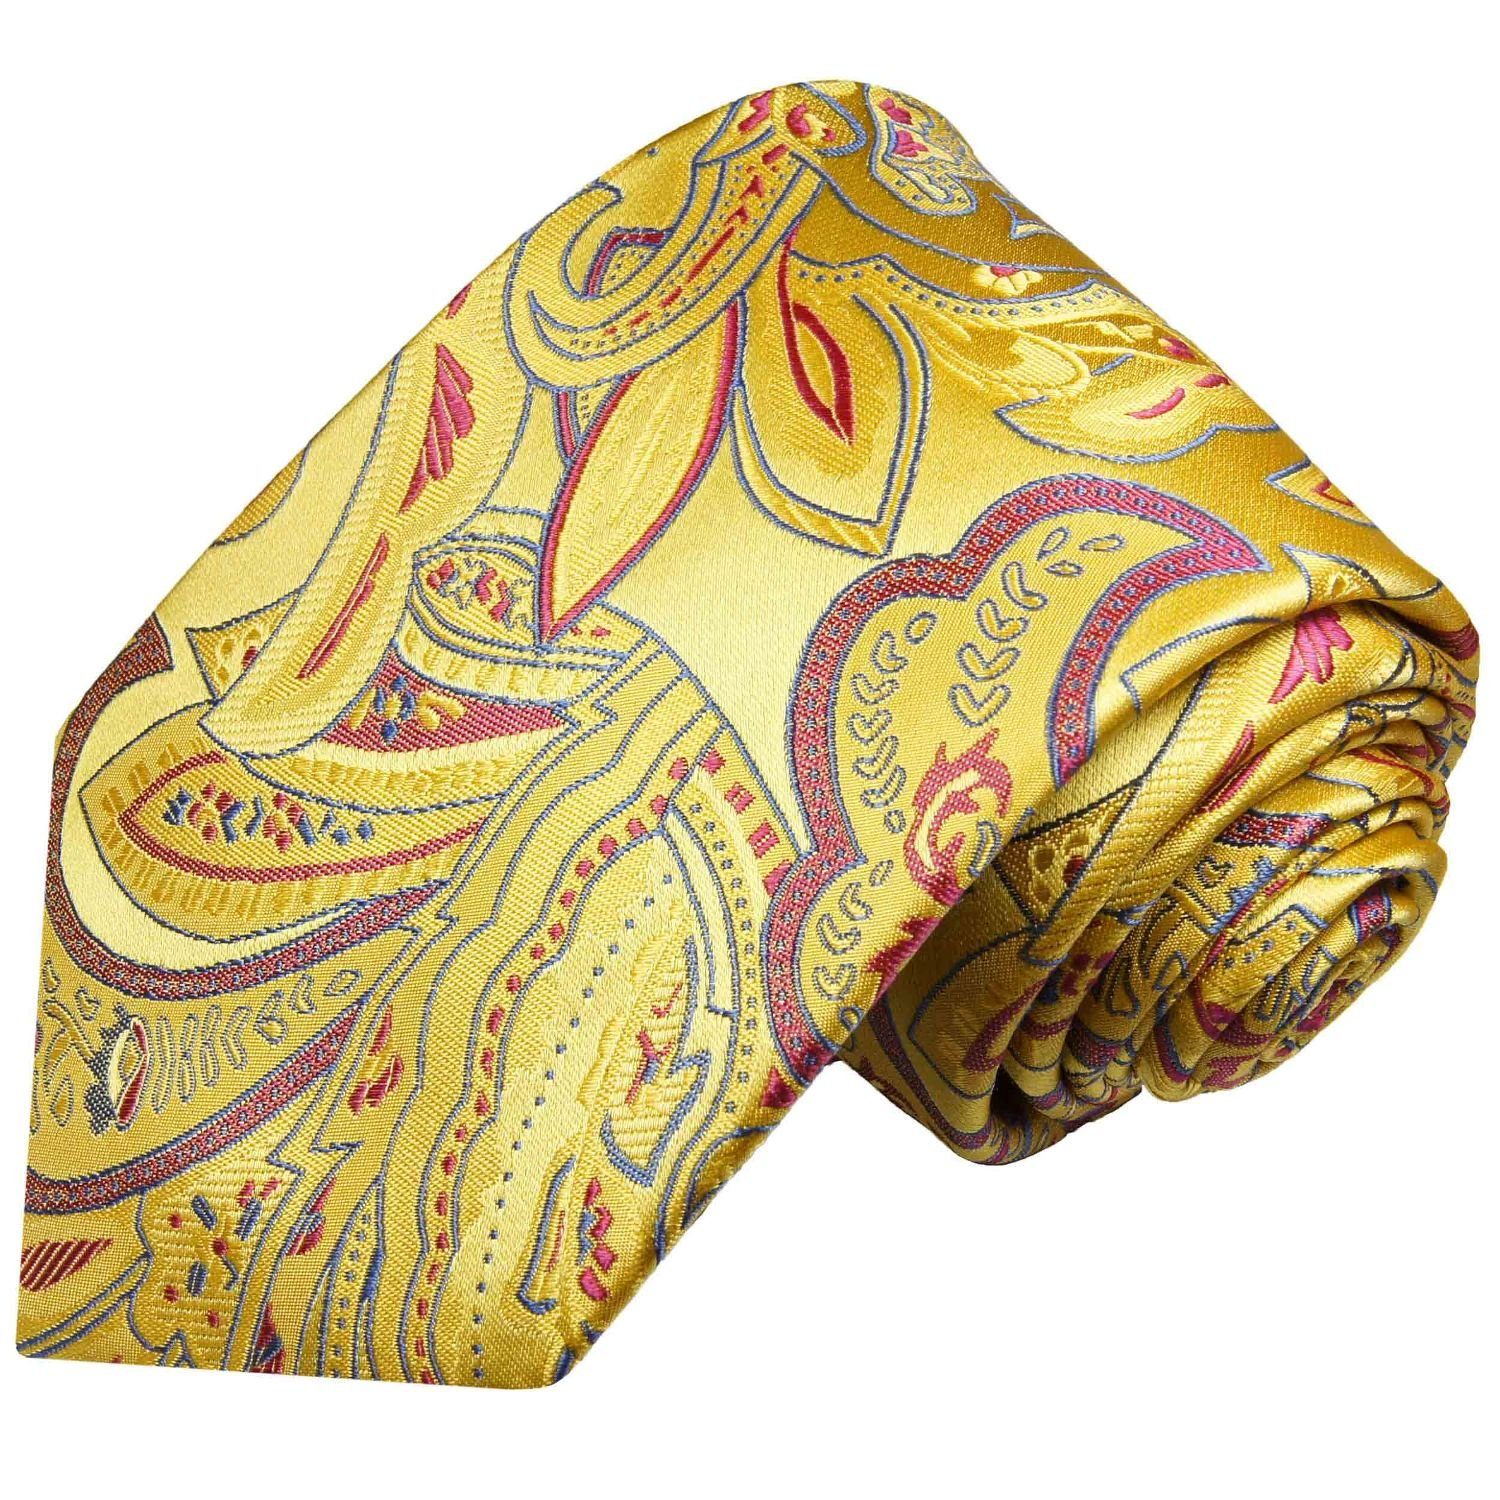 Paul Malone Krawatte Elegante Seidenkrawatte Herren Schlips paisley floral 100% Seide Schmal (6cm), gelb rot 2028